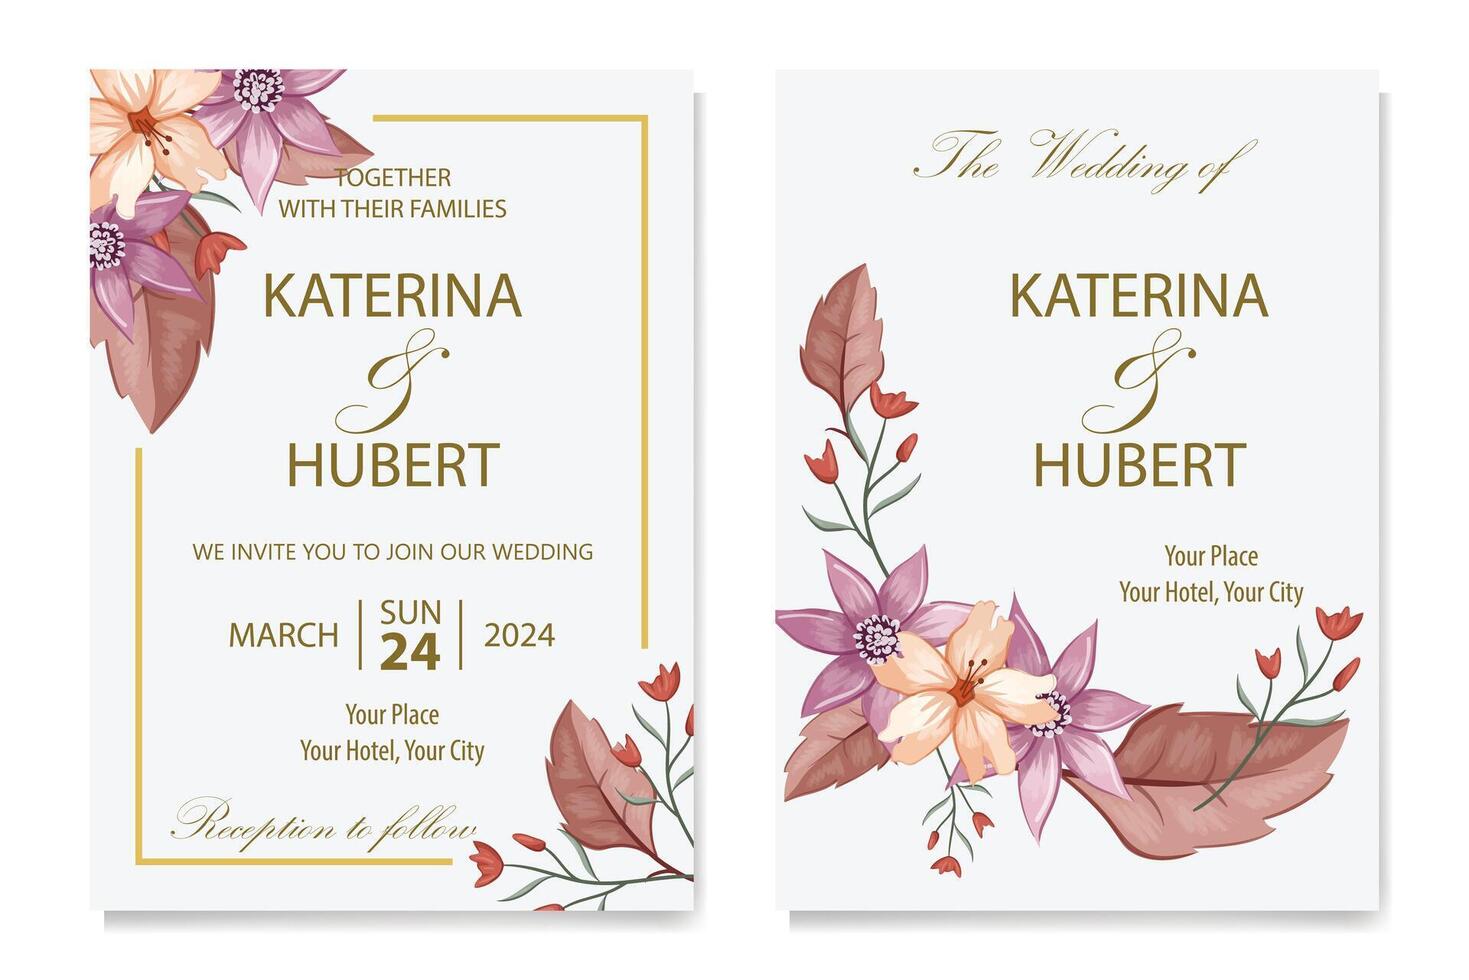 décoratif floral feuillage ornement pour mariage invitation vecteur